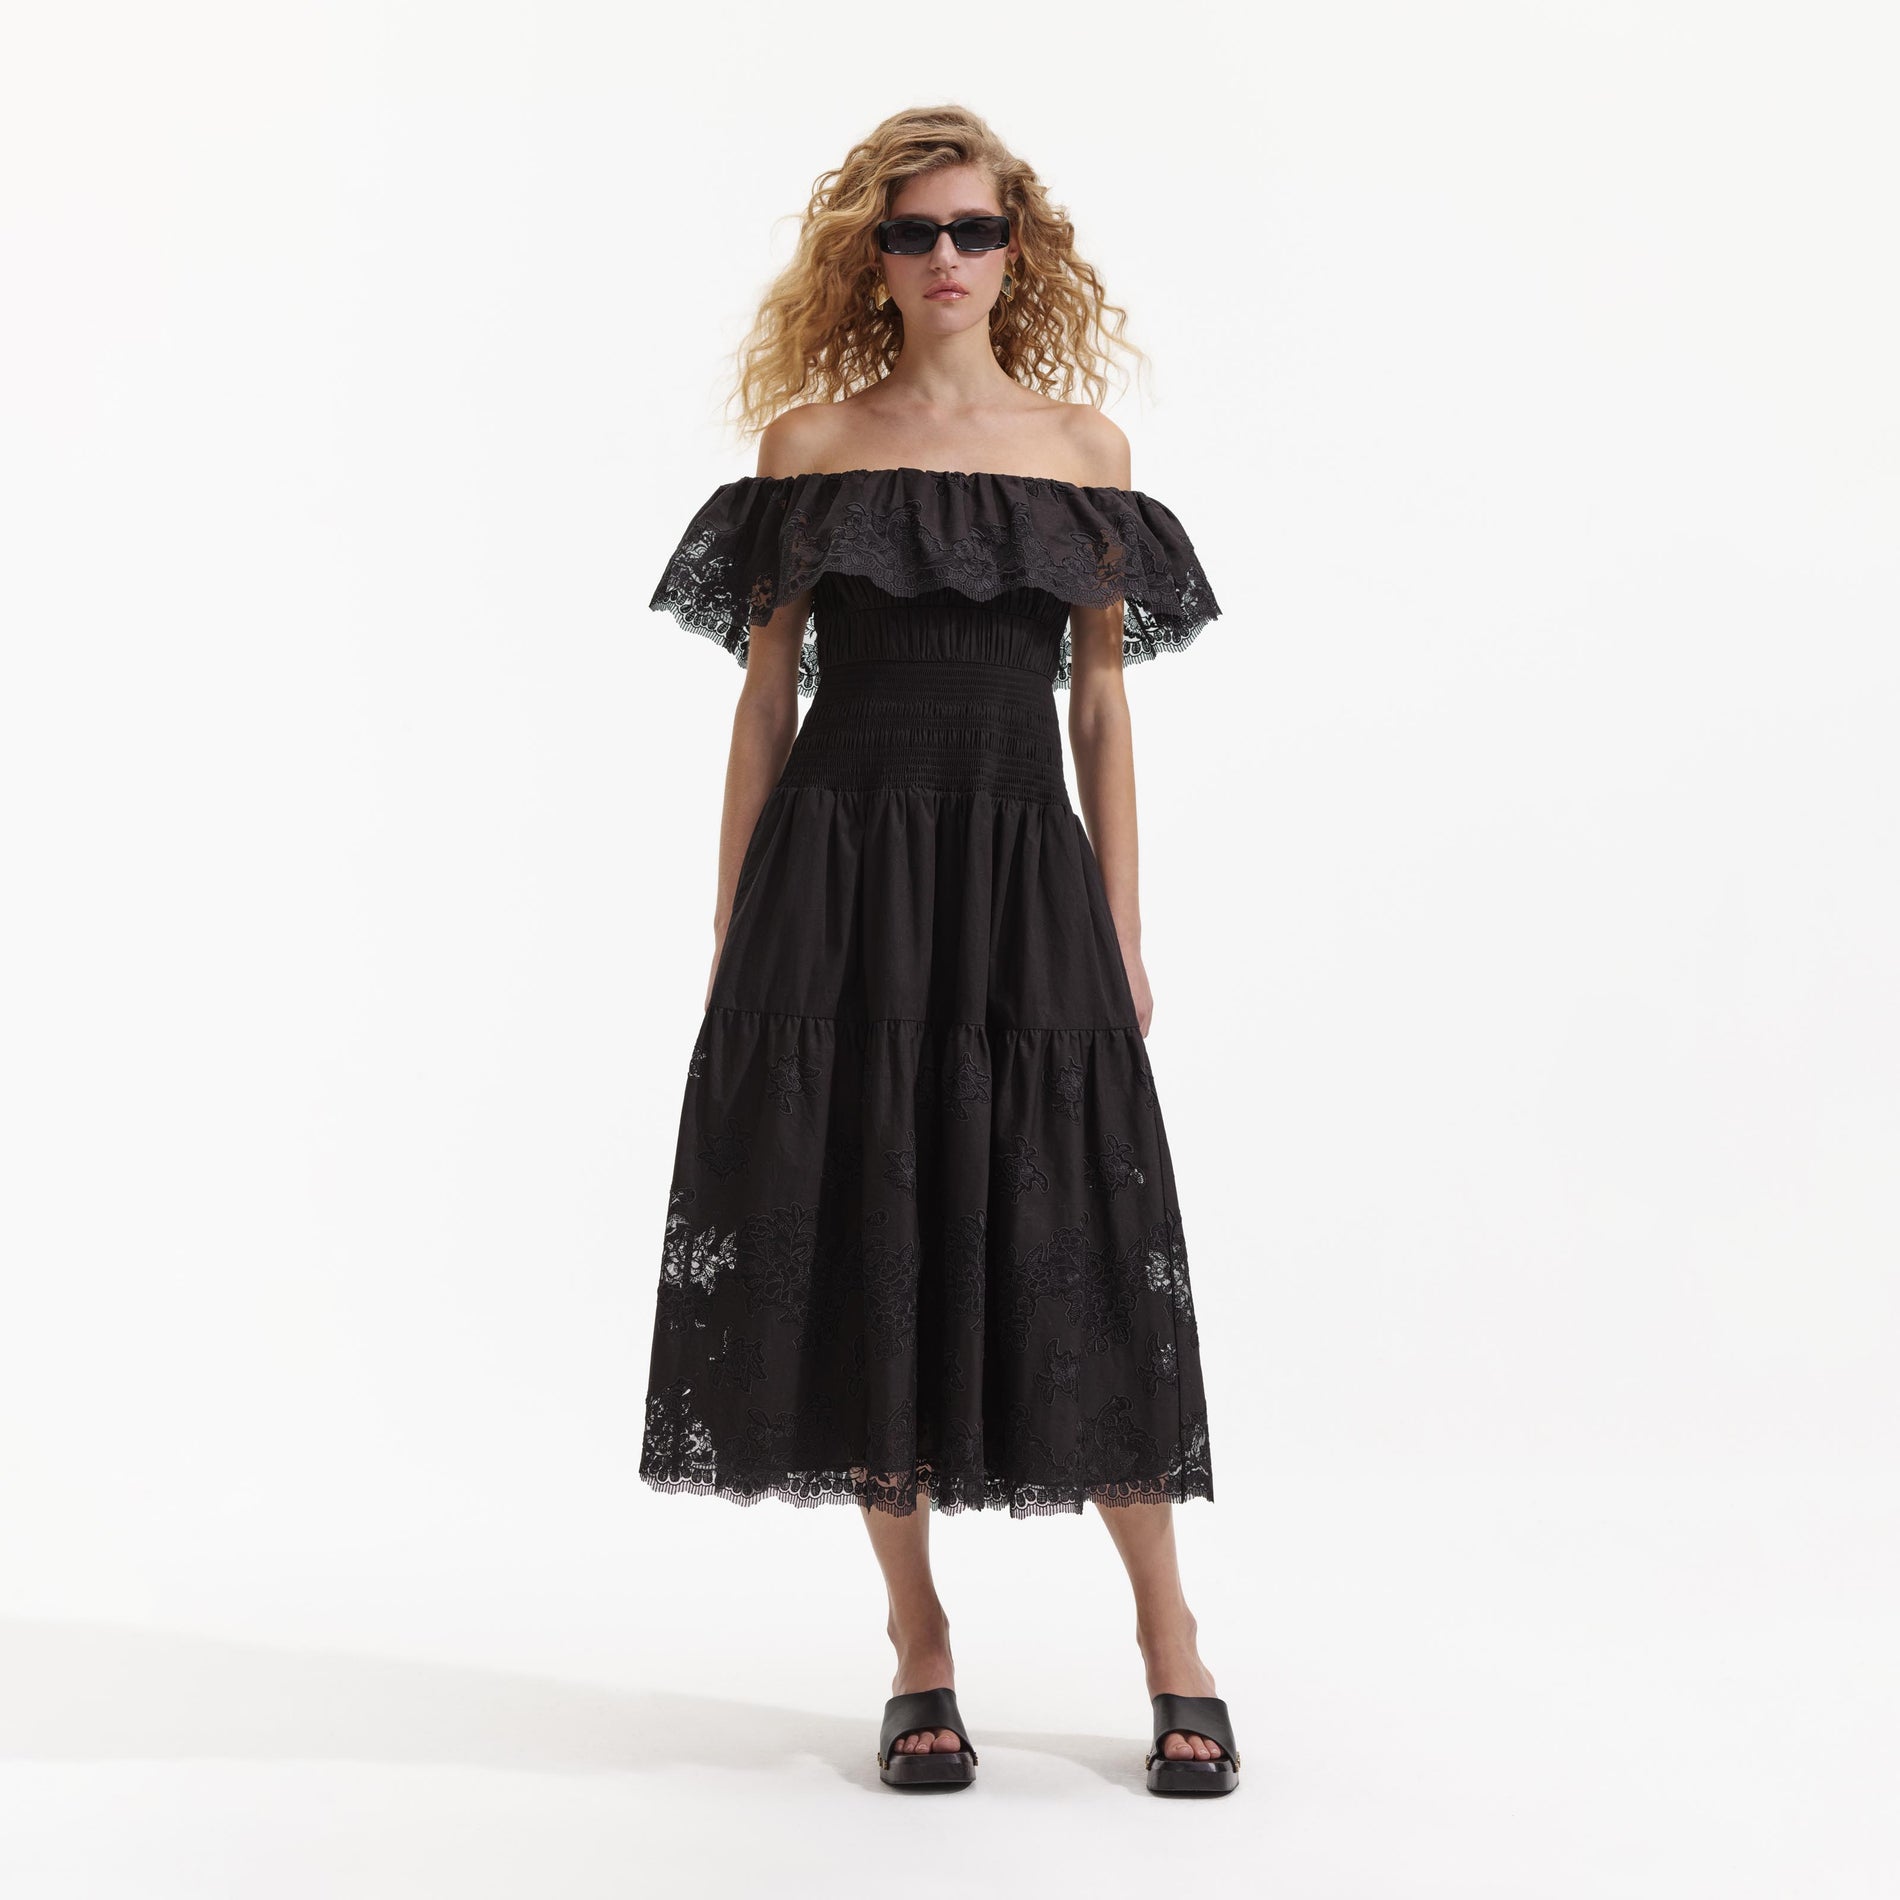 Self-Portrait Contrast Trim Geometric Guipure Lace Ruffle Dress in Black